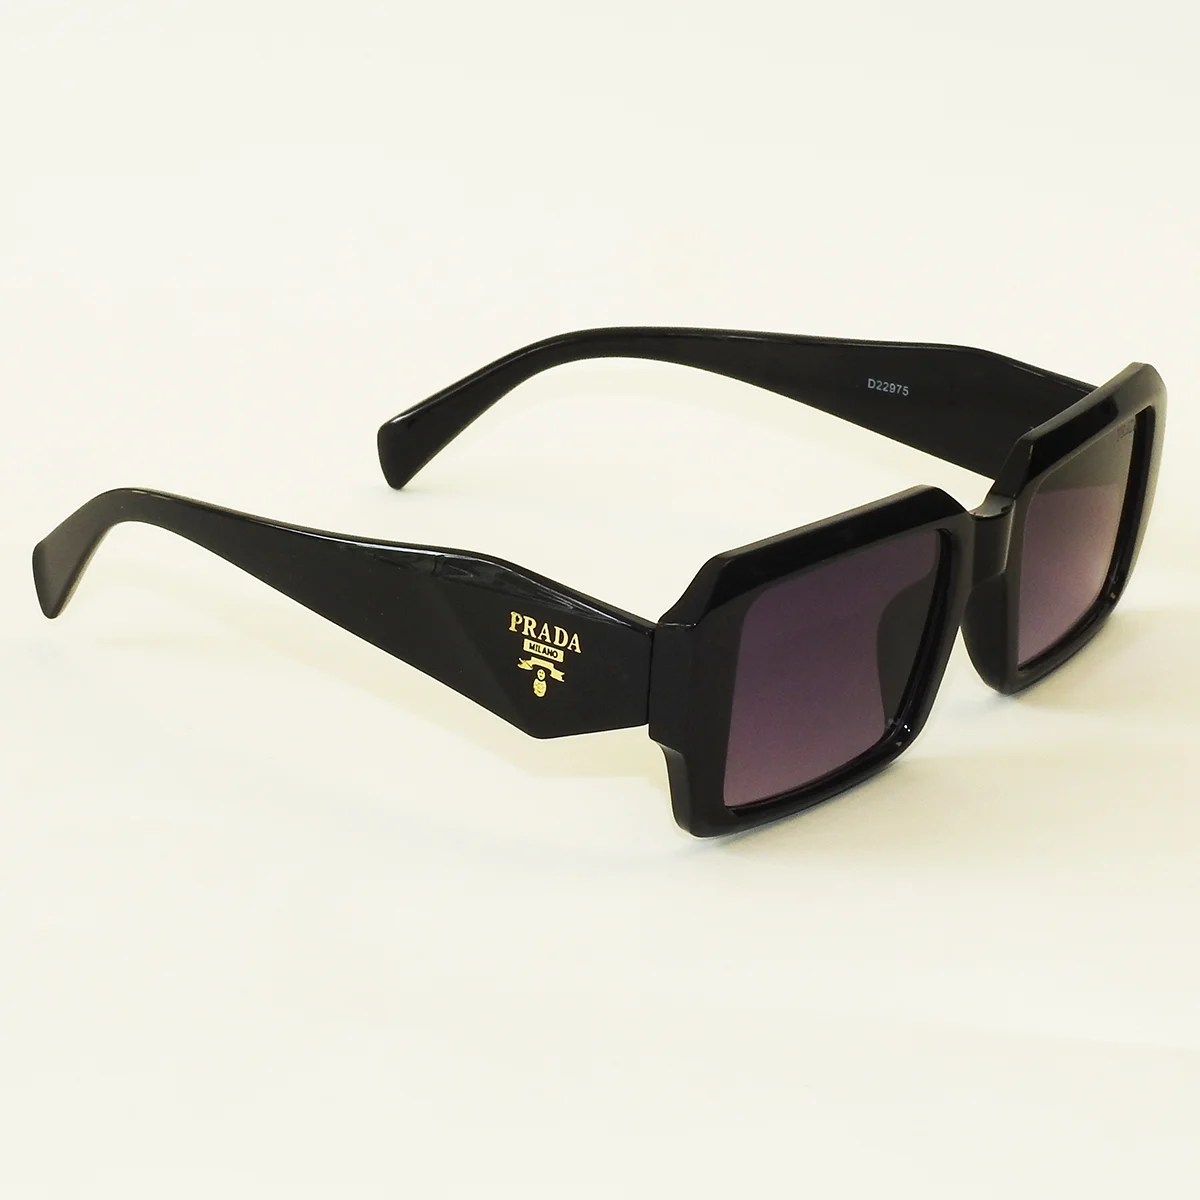 عینک آفتابی Prada مدل D22975